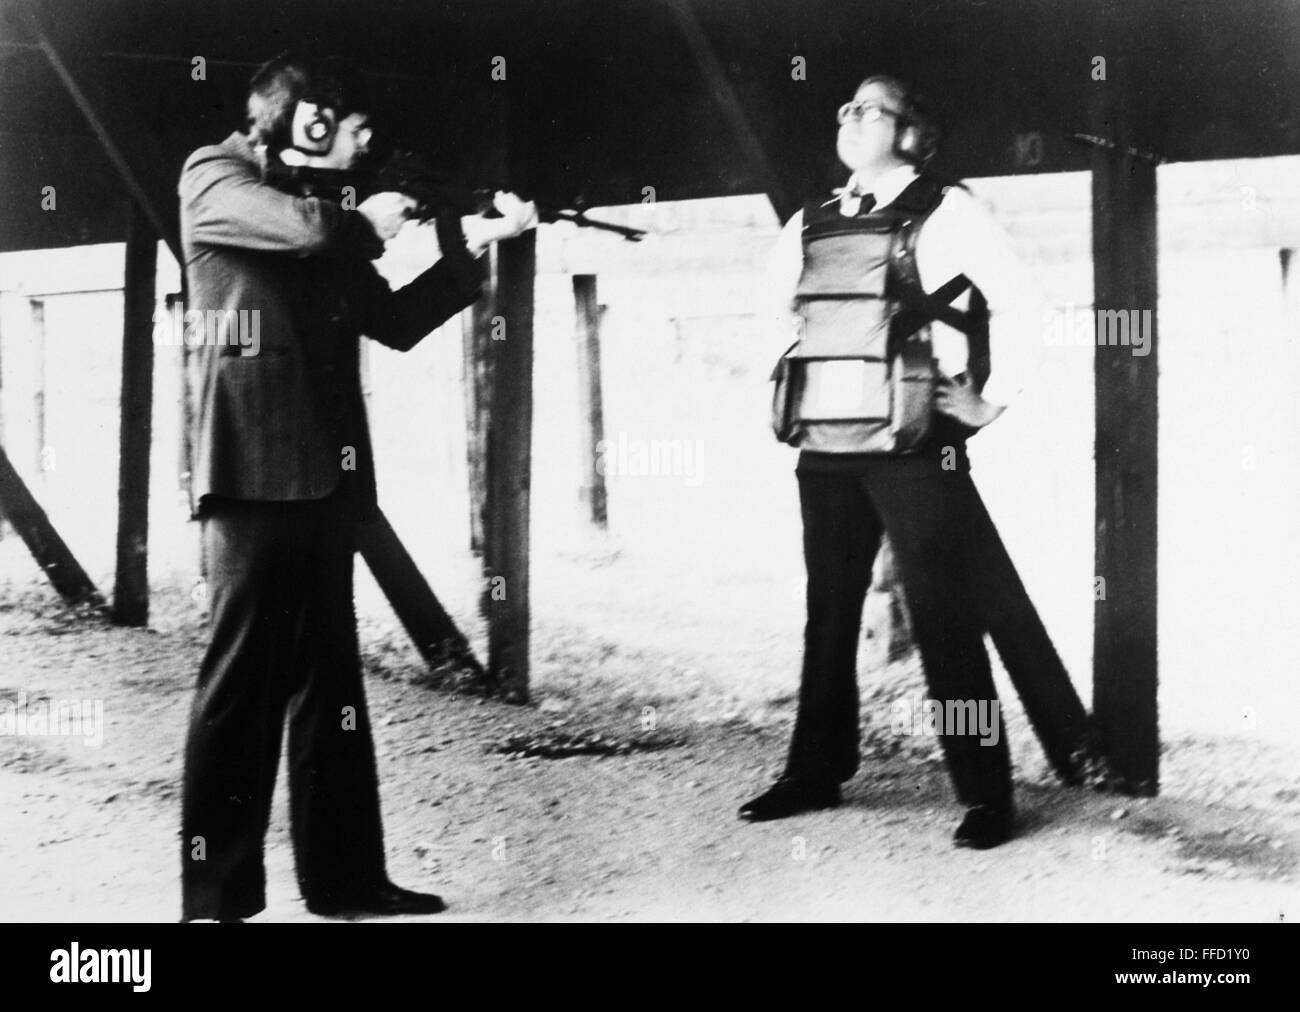 AMERICAN corpo armatura, 1970s. /NA incendi volontari armor piercing le munizioni in un giubbotto Hardcorps, indossata dall'inventore, Richard Davis, 1970s. Foto Stock